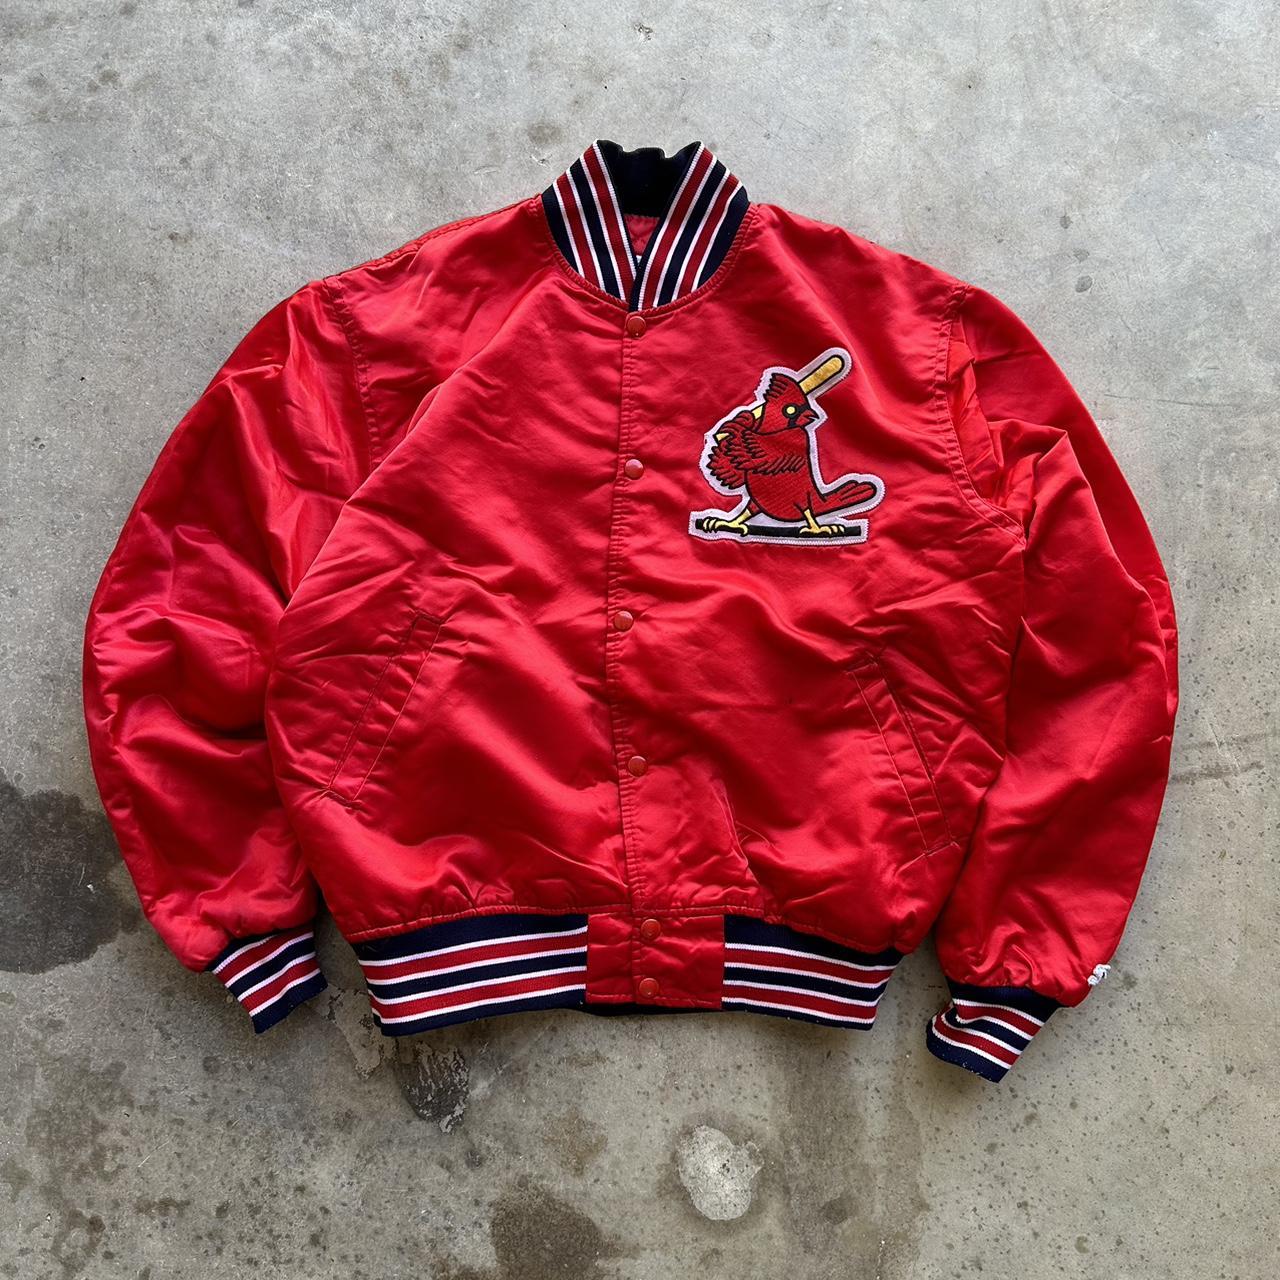 Starter St. Louis Cardinals Satin Jacket